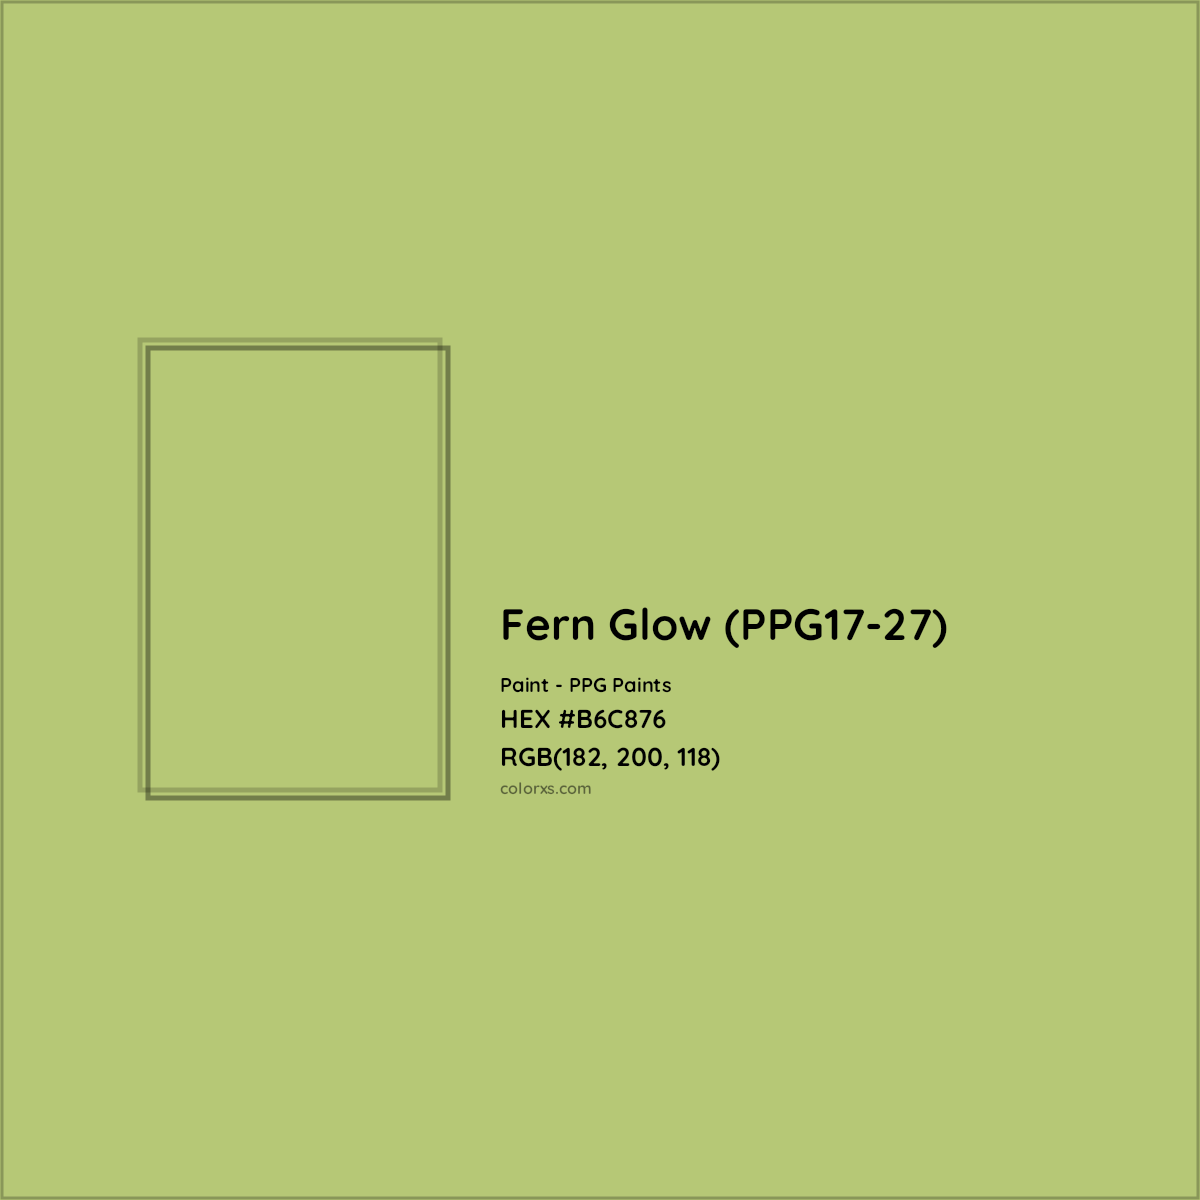 HEX #B6C876 Fern Glow (PPG17-27) Paint PPG Paints - Color Code